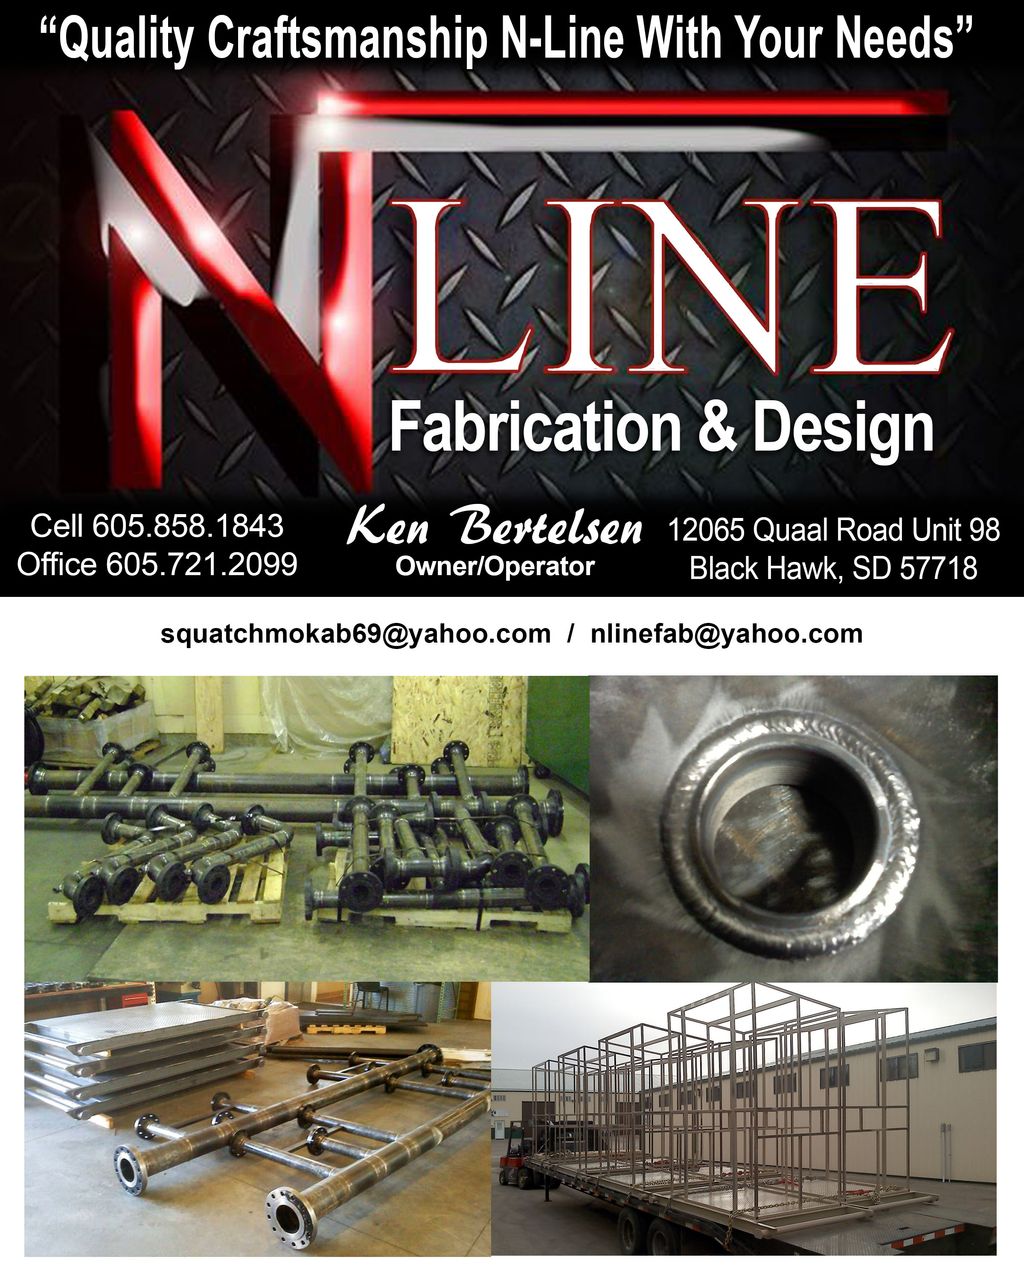 N-Line Fabrication & Design Mfg. LLC